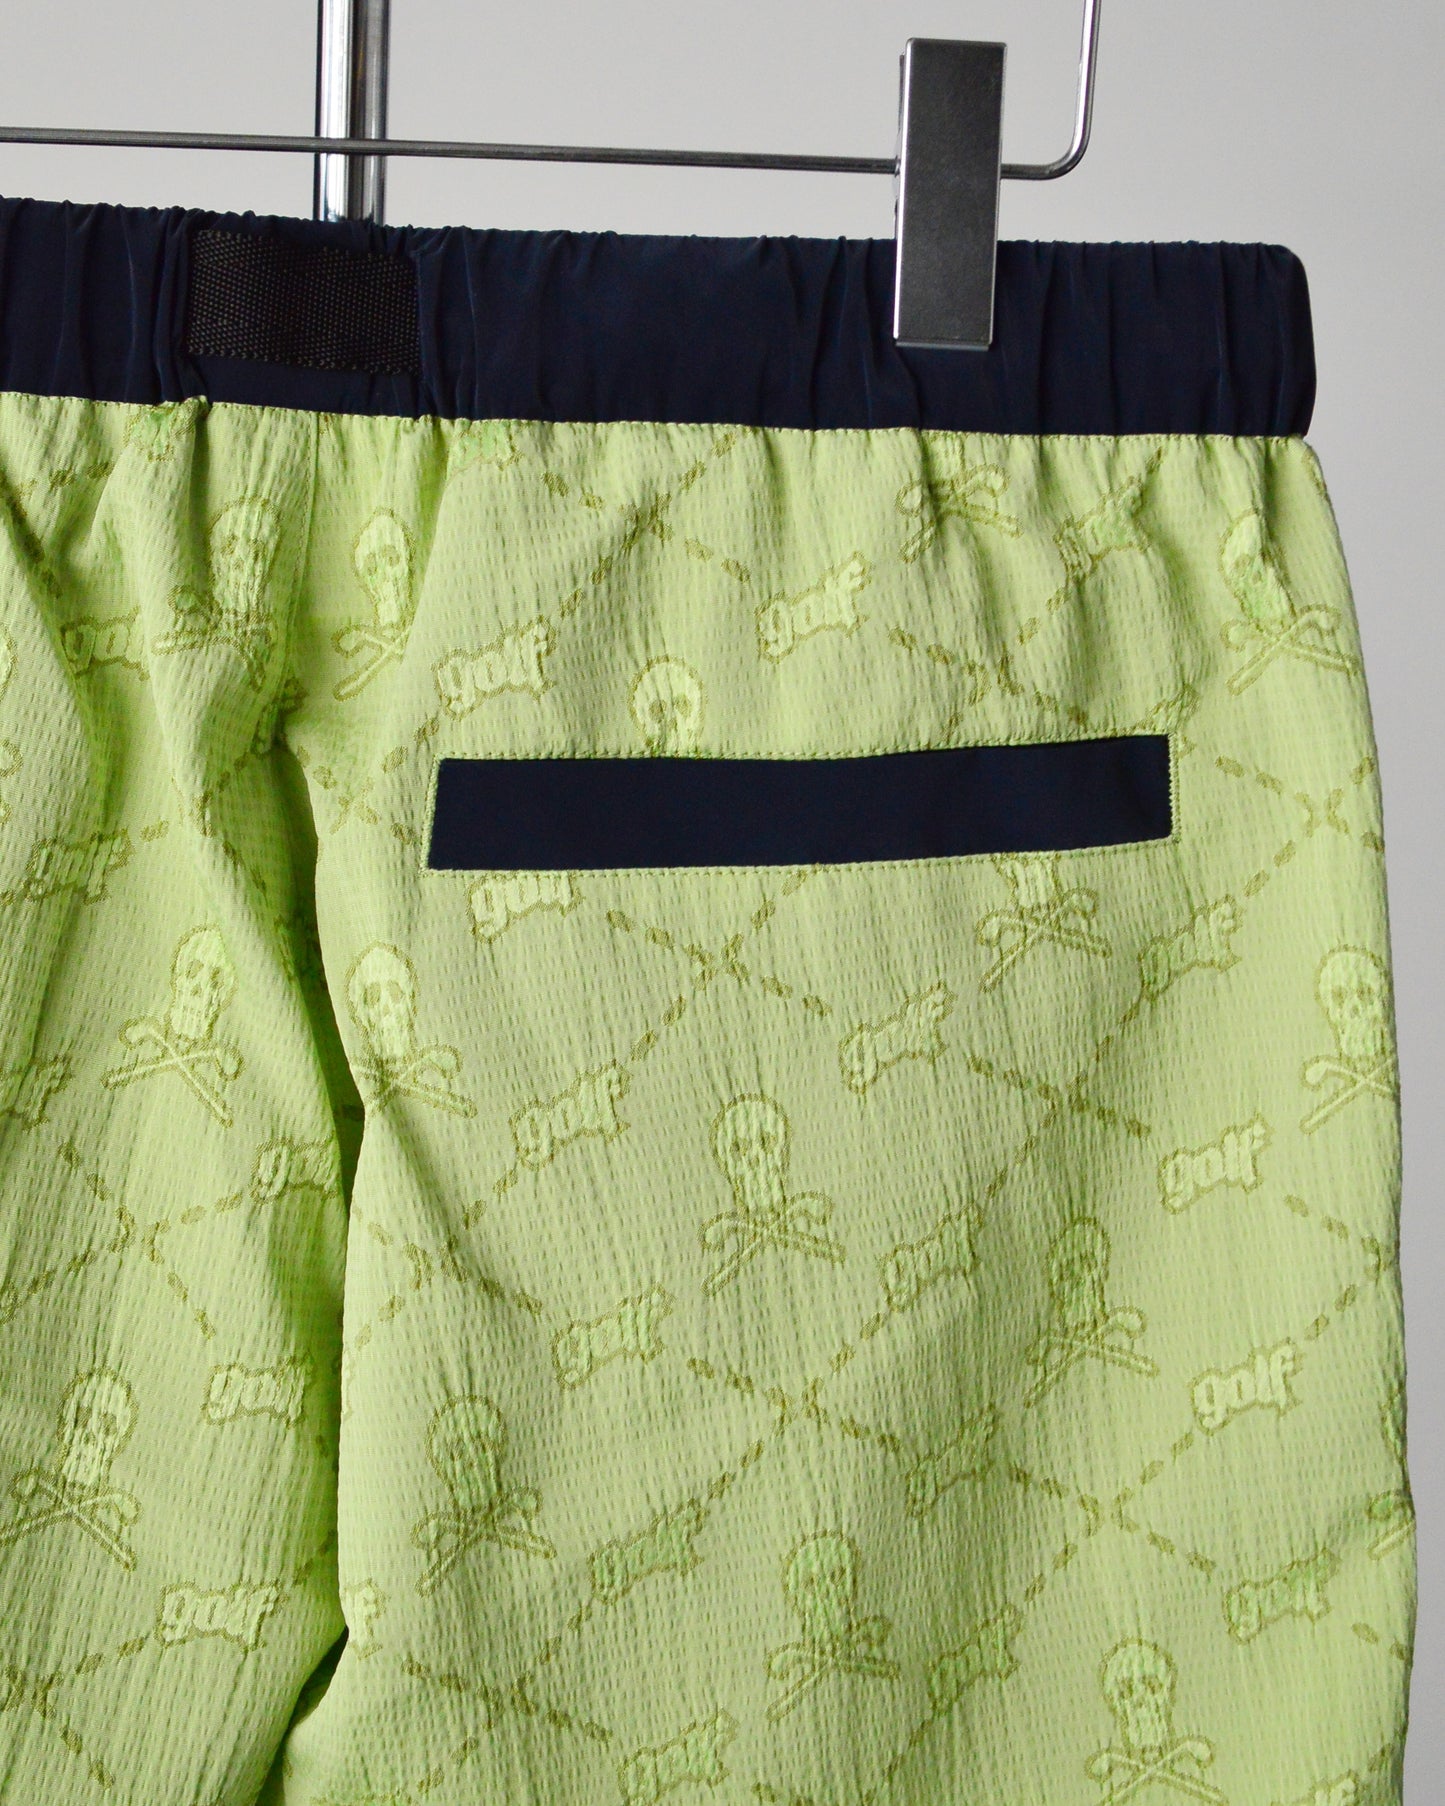 Special Blend Belt Shorts | MEN / GREEN